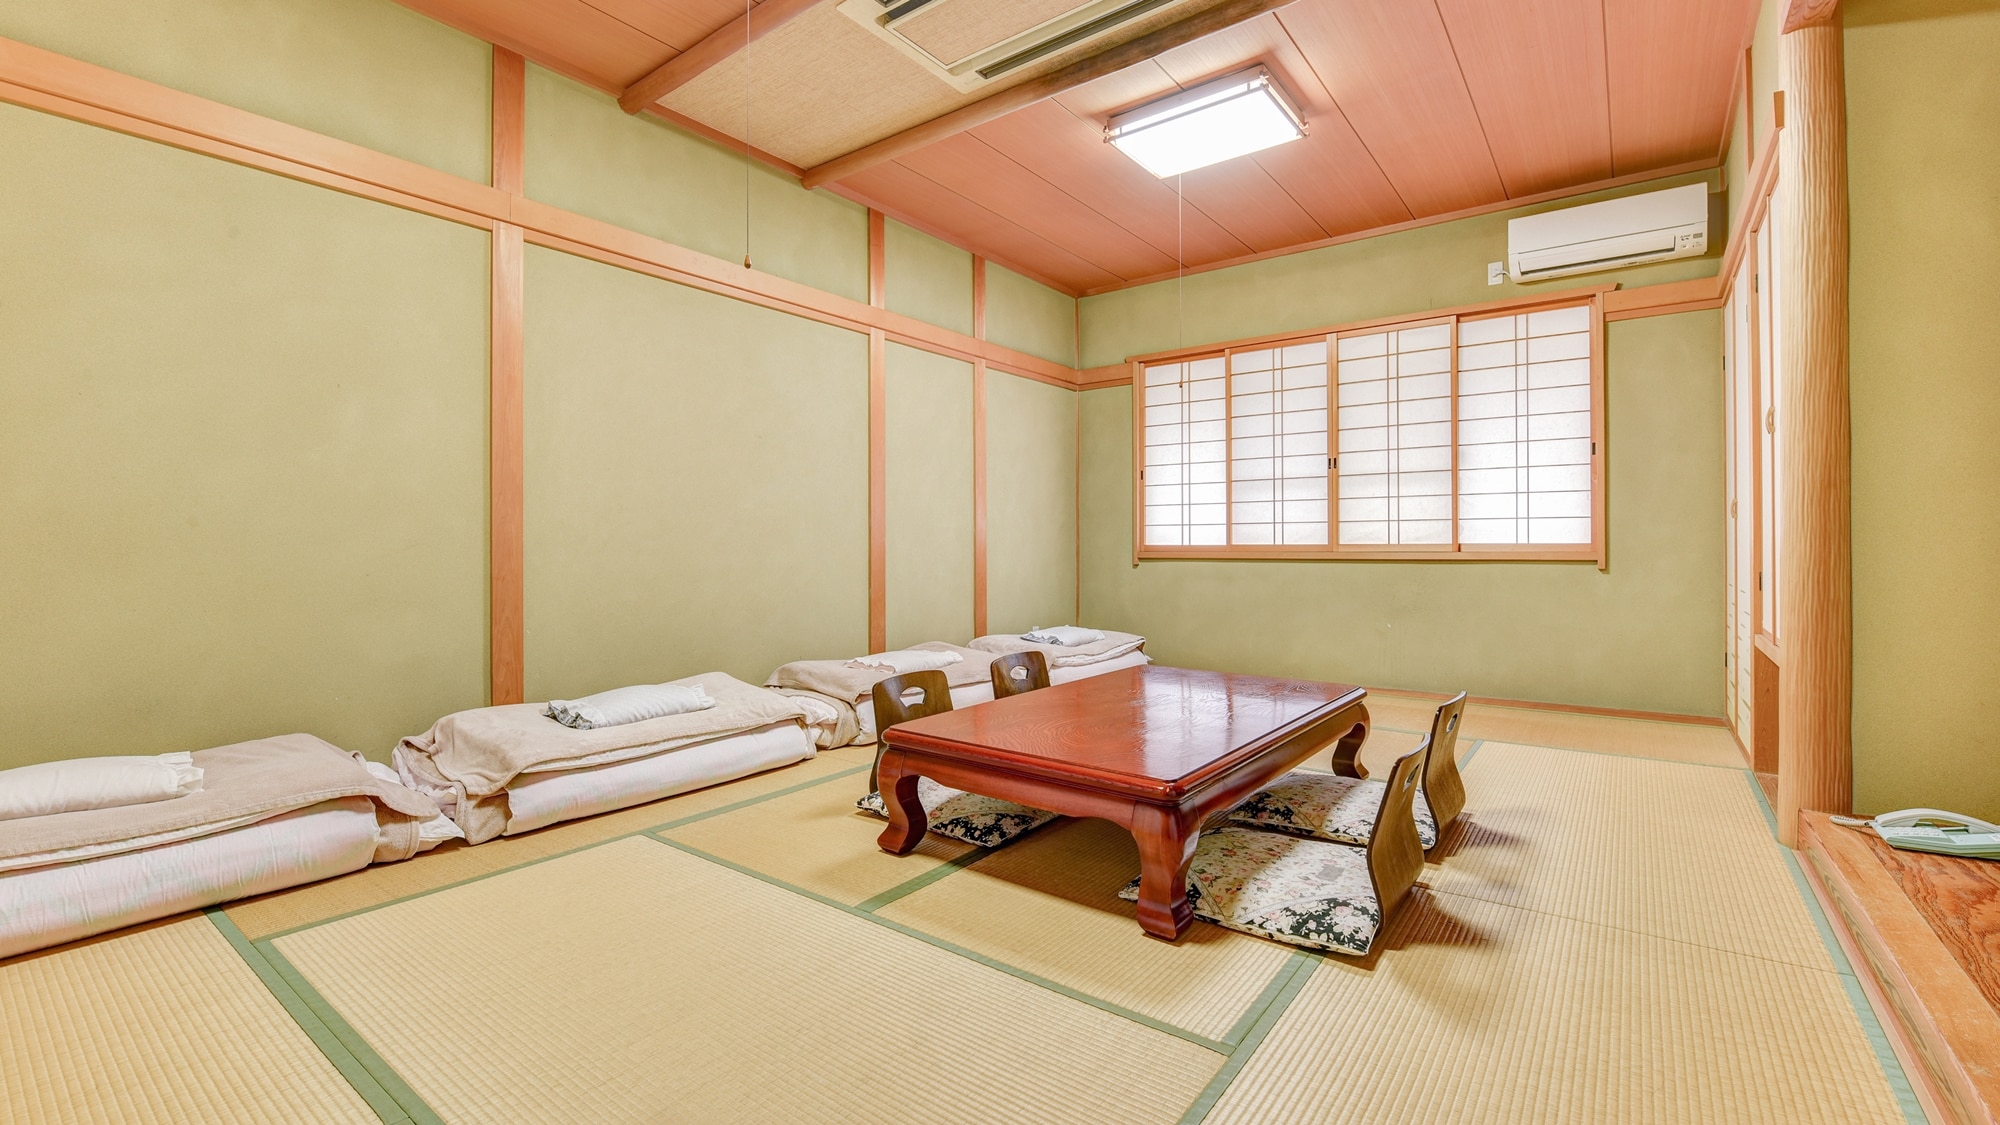 * ห้องสไตล์ญี่ปุ่น 12 เสื่อทาทามิ / ห้องพักสไตล์ญี่ปุ่นล้วนมีบรรยากาศที่หรูหราและเงียบสงบ โปรดใช้เวลาพักผ่อนกับครอบครัวหรือกลุ่ม